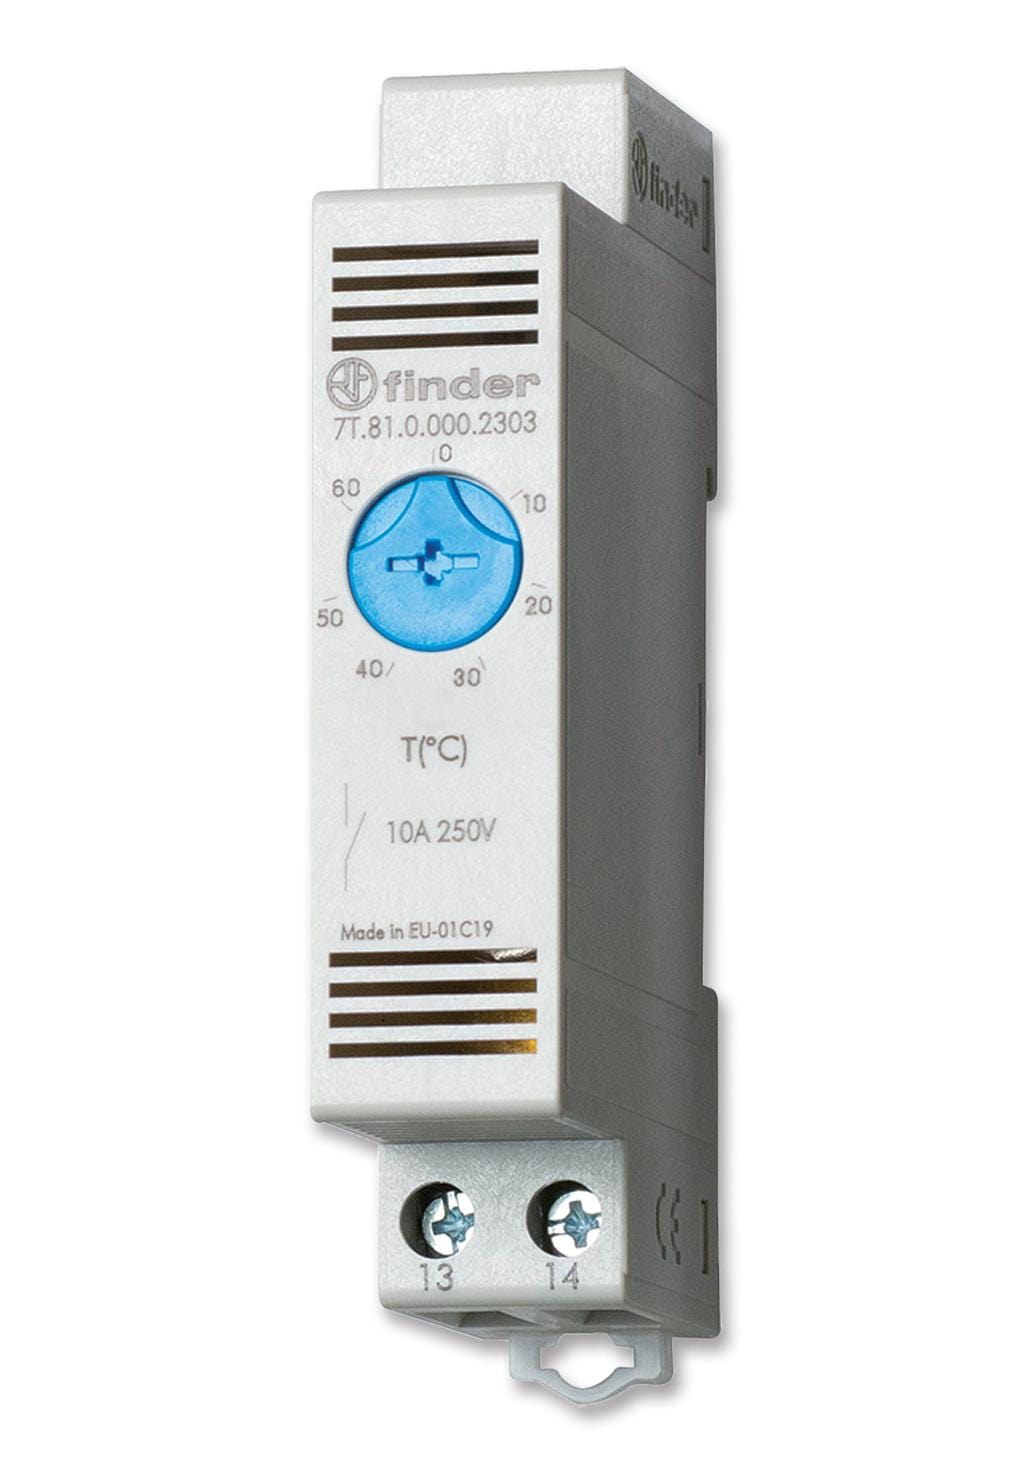 FINDER Thermostats 7T.81.0.000.2301 THERMOSTAT, NO, -20 DEG TO 40 DEG, 250V FINDER 2295780 7T.81.0.000.2301